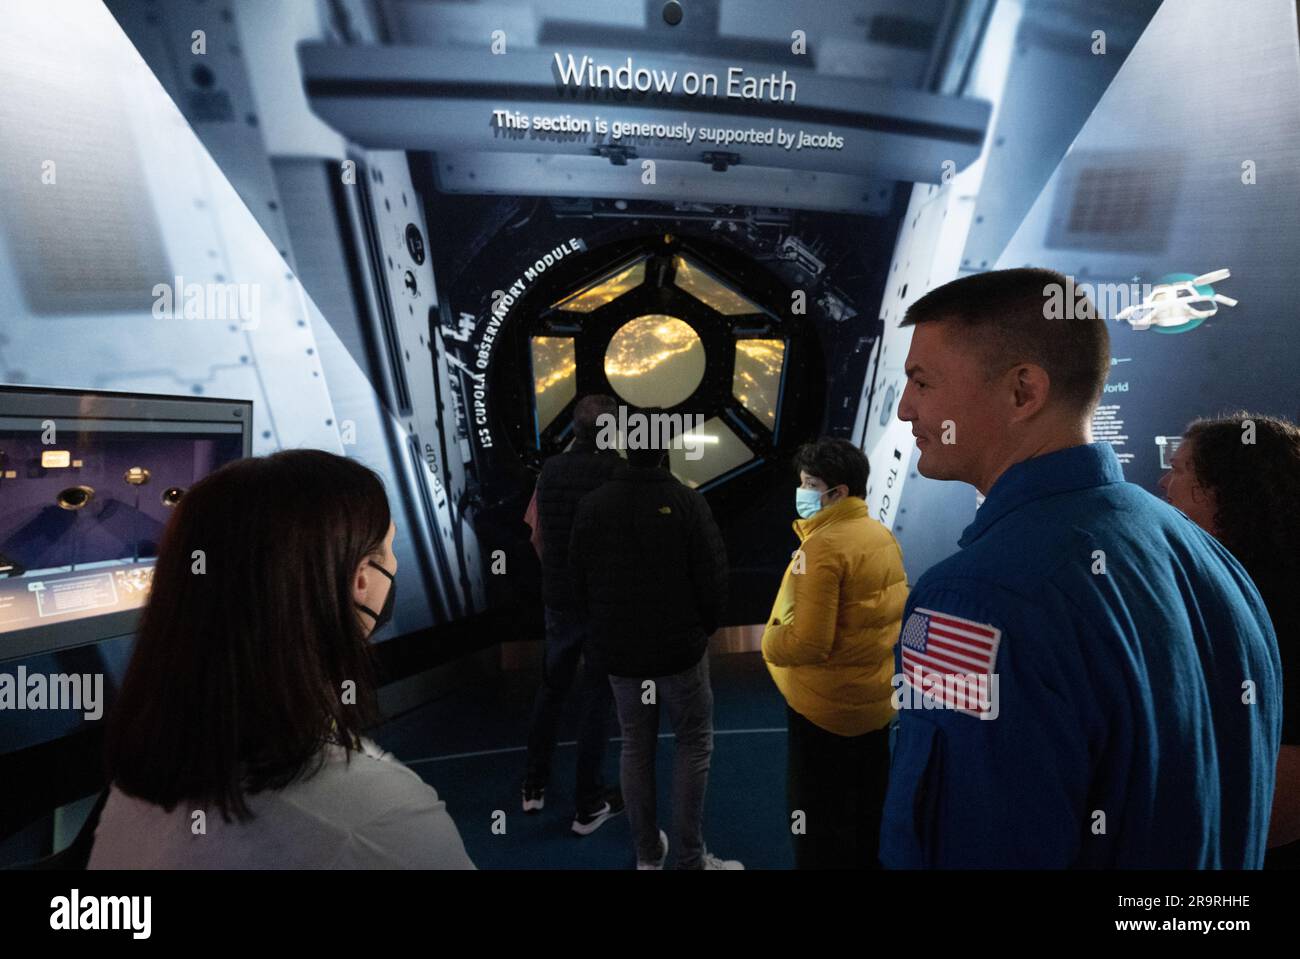 NASA-SpaceX Crew-4 bei der NASM. Jennifer Levasseur, Kurator des nationalen Luft- und Raumfahrtmuseums Smithsonian, und der NASA-Astronaut Kjell Lindgren sind in der One World Connected Galerie zu sehen, die sich eine interaktive Nachbildung der Cupola der Internationalen Raumstation anschaut, die am Dienstag, den 28. März 2023 im Smithsonian's National Air and Space Museum in Washington stattfindet. Lindgren verbrachte zusammen mit den NASA-Astronauten Robert Hines und Jessica Watkins im Rahmen der Expeditionen 67 und 68 170 Tage im Weltraum an Bord der Internationalen Raumstation. Stockfoto